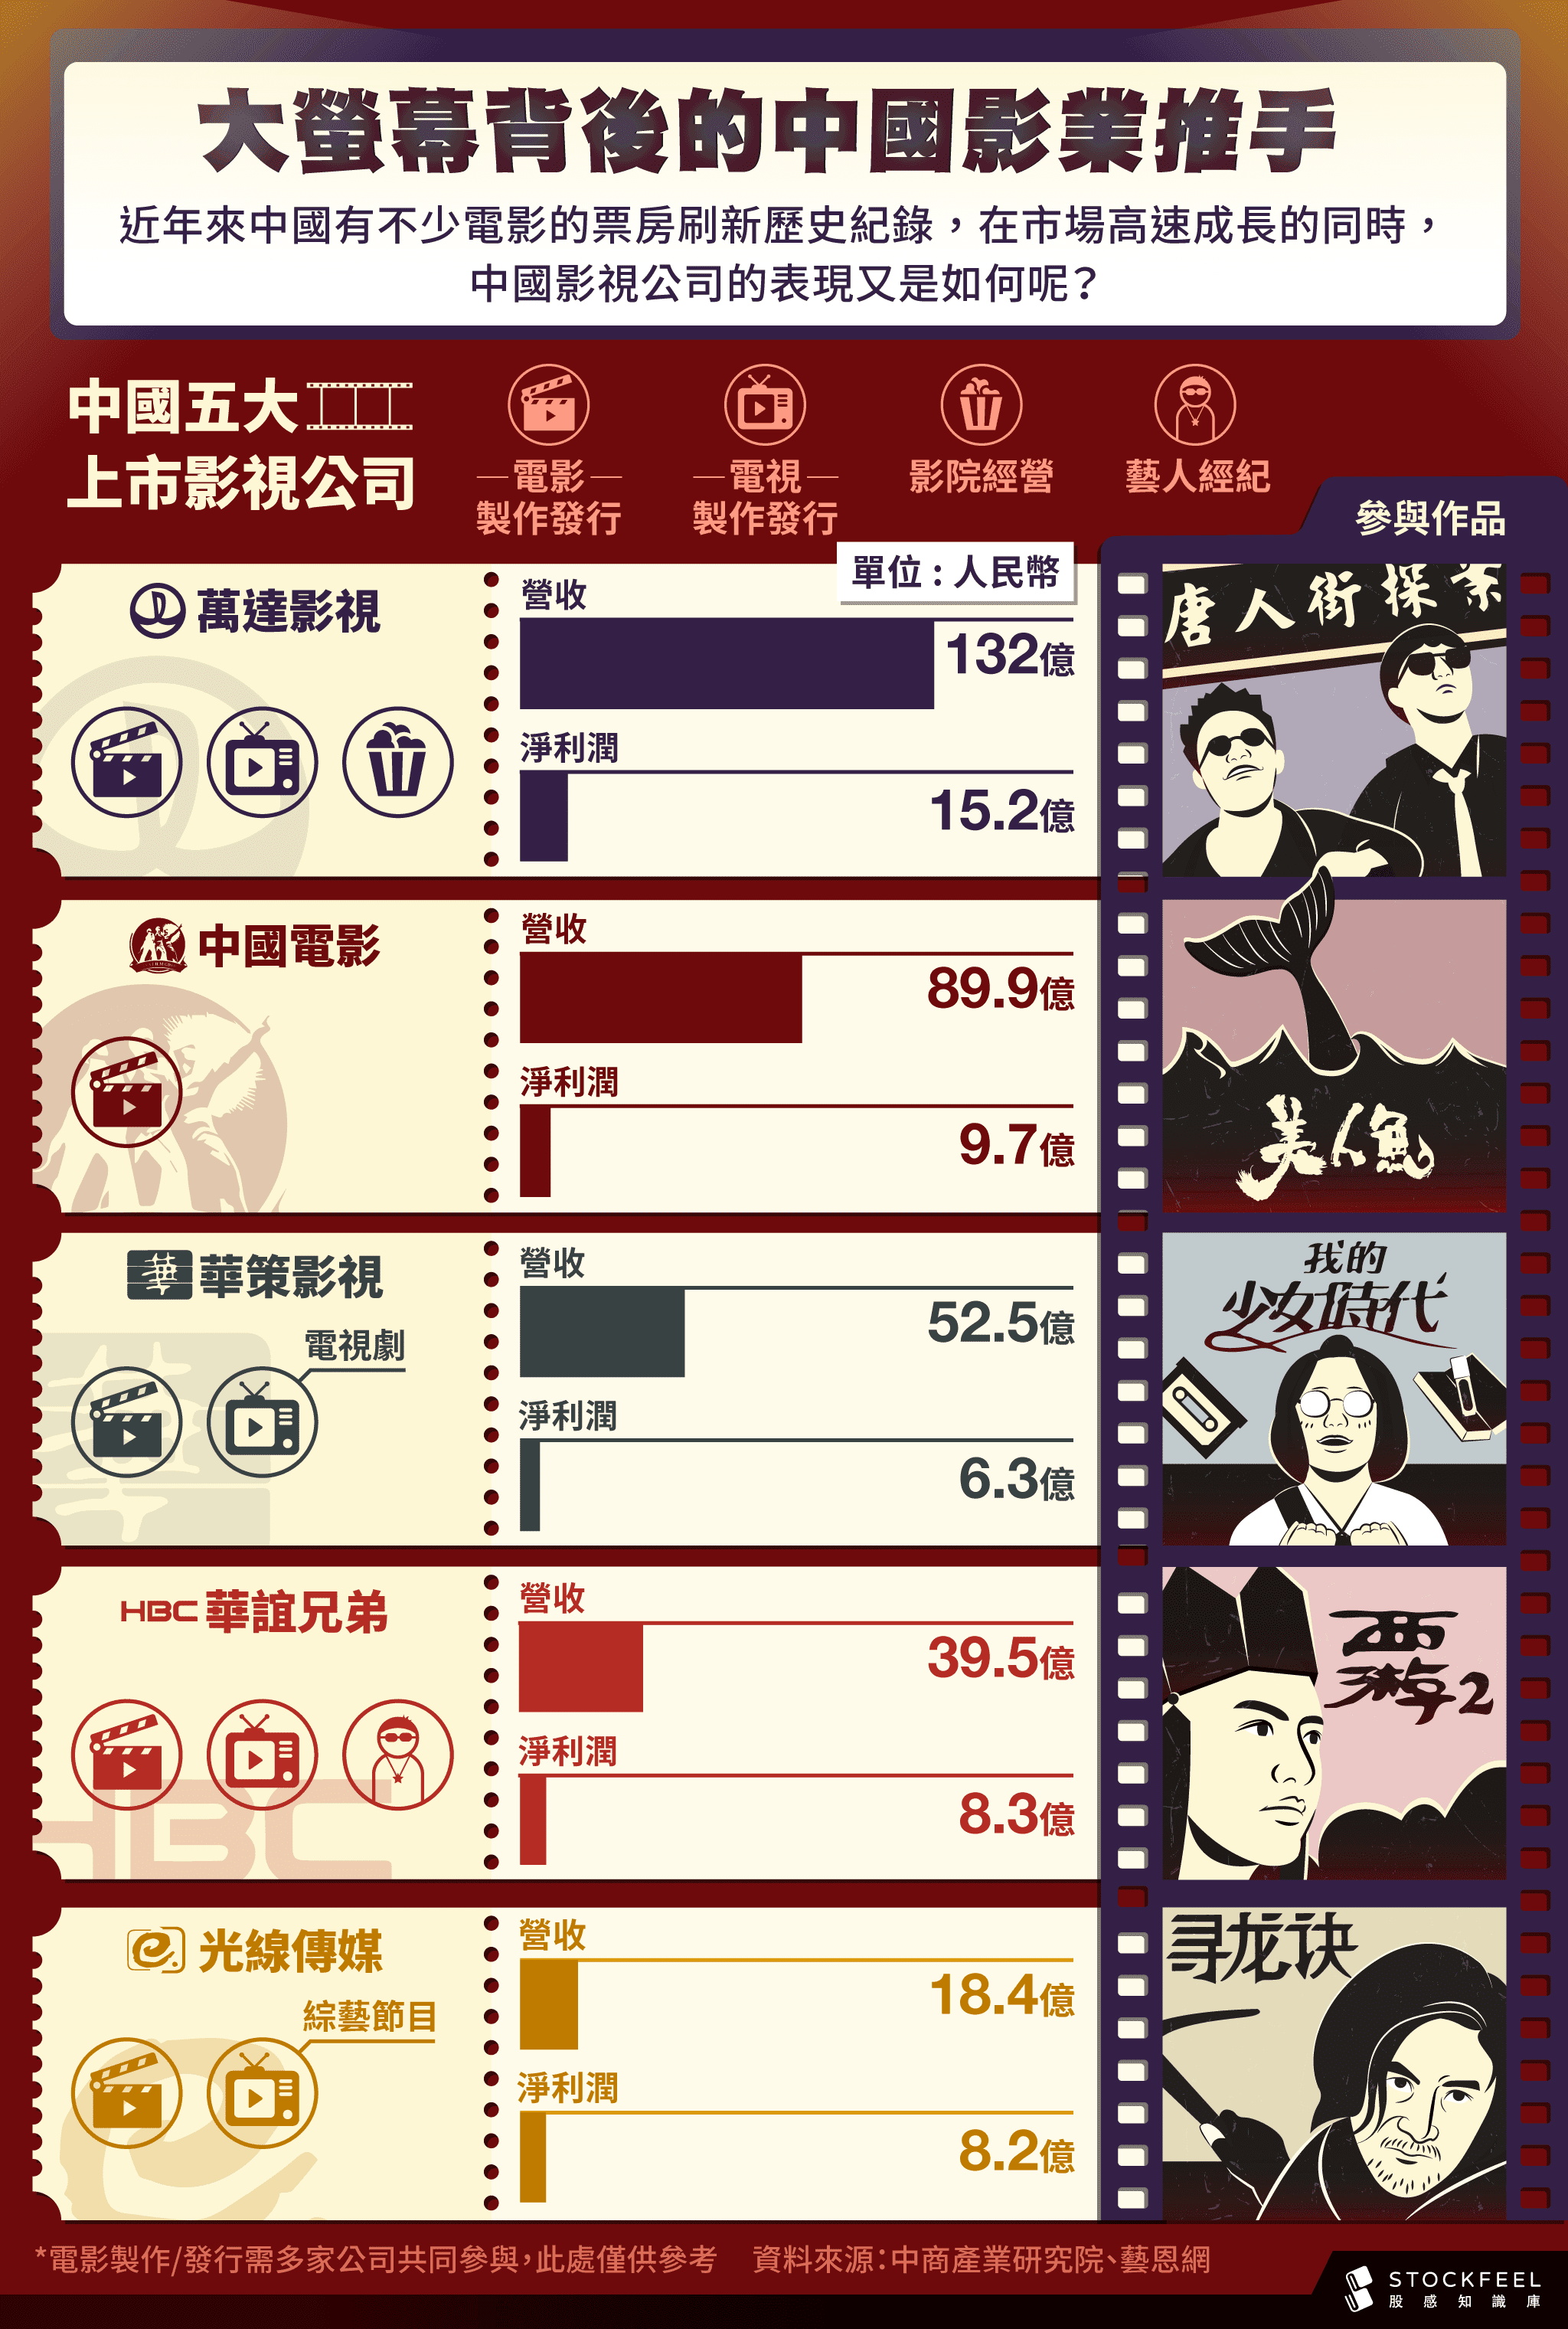 中國影業 暢銷院線片排名